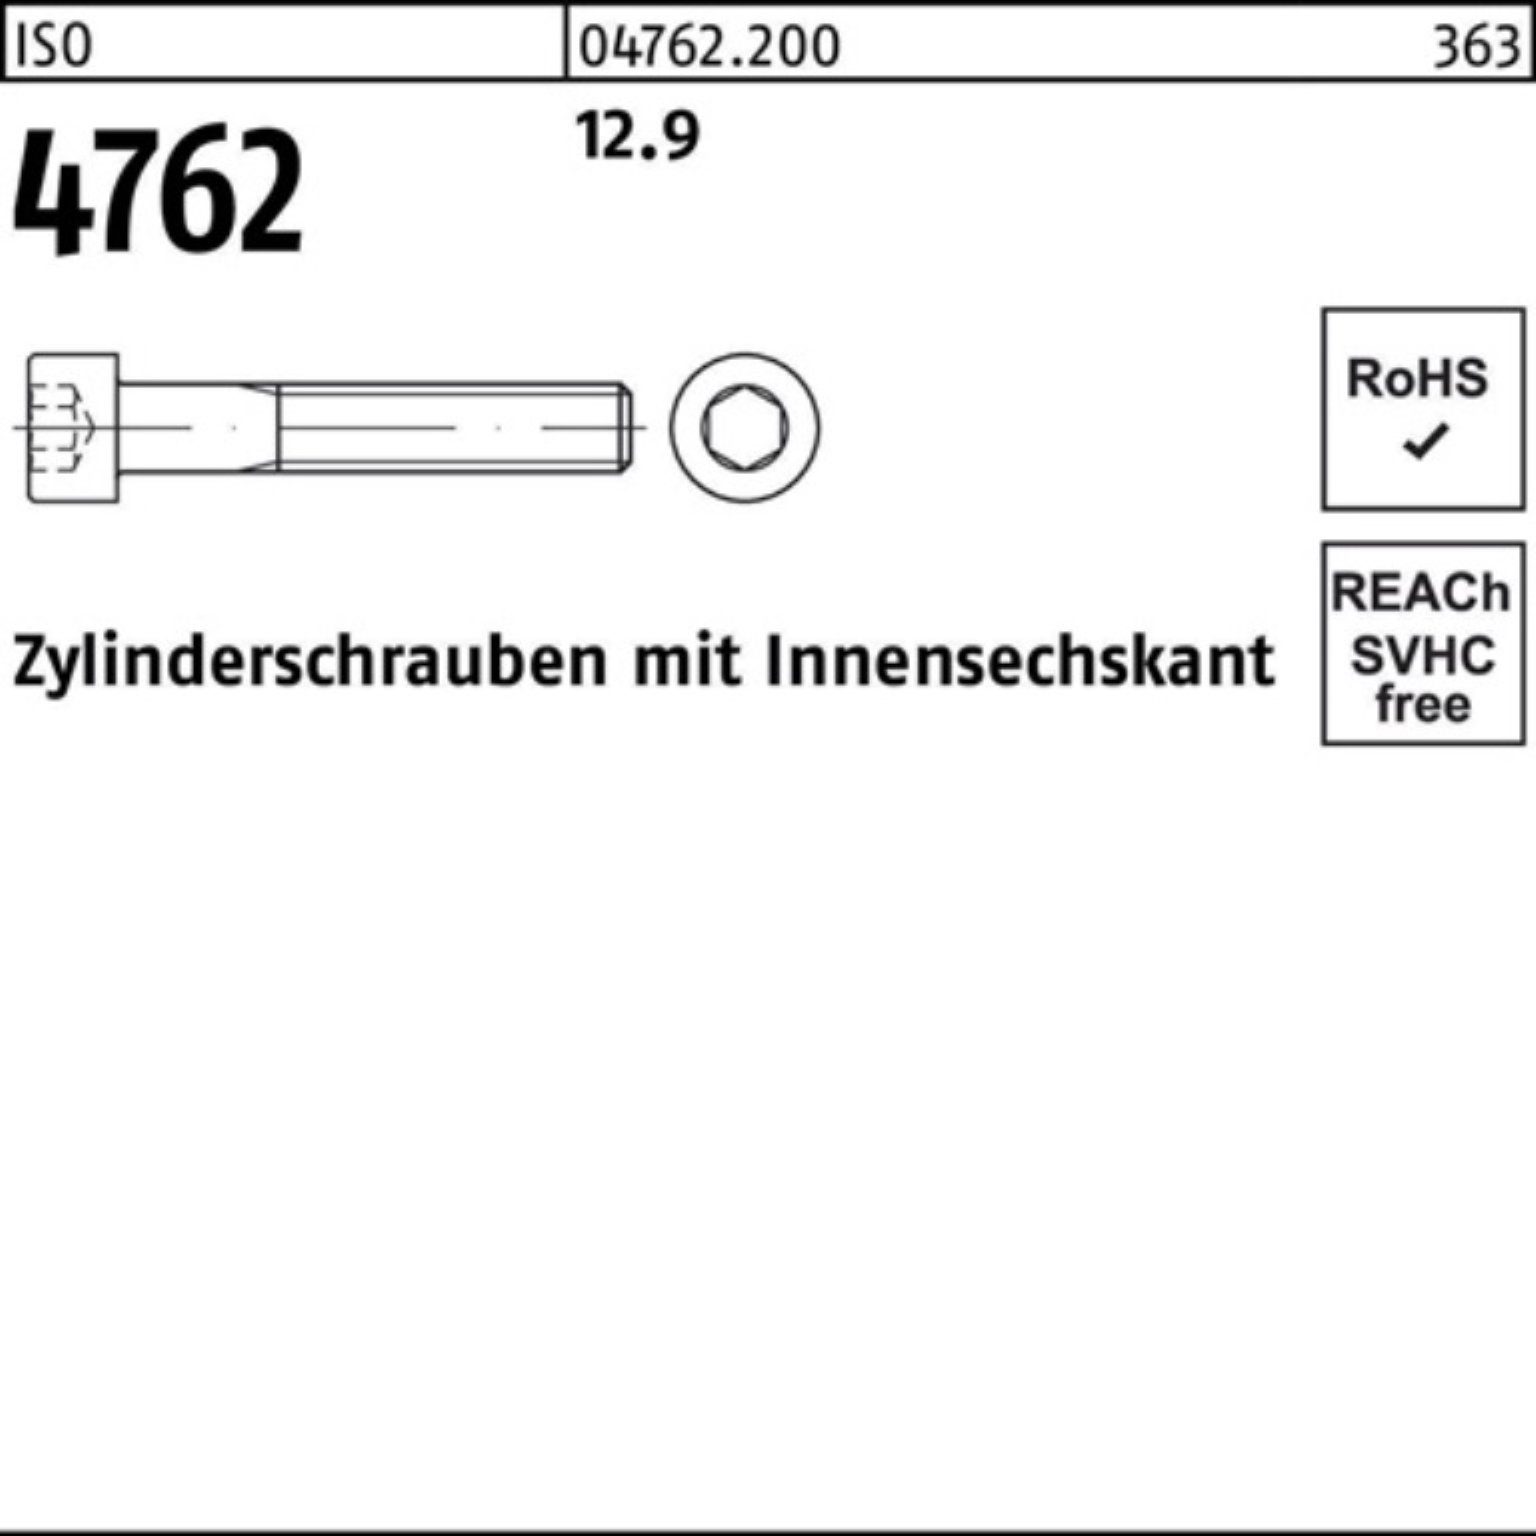 Zylinderschraube 200 M5x 12.9 Stück Pack Reyher Zylinderschraube 4762 45 Innen-6kt ISO 200er